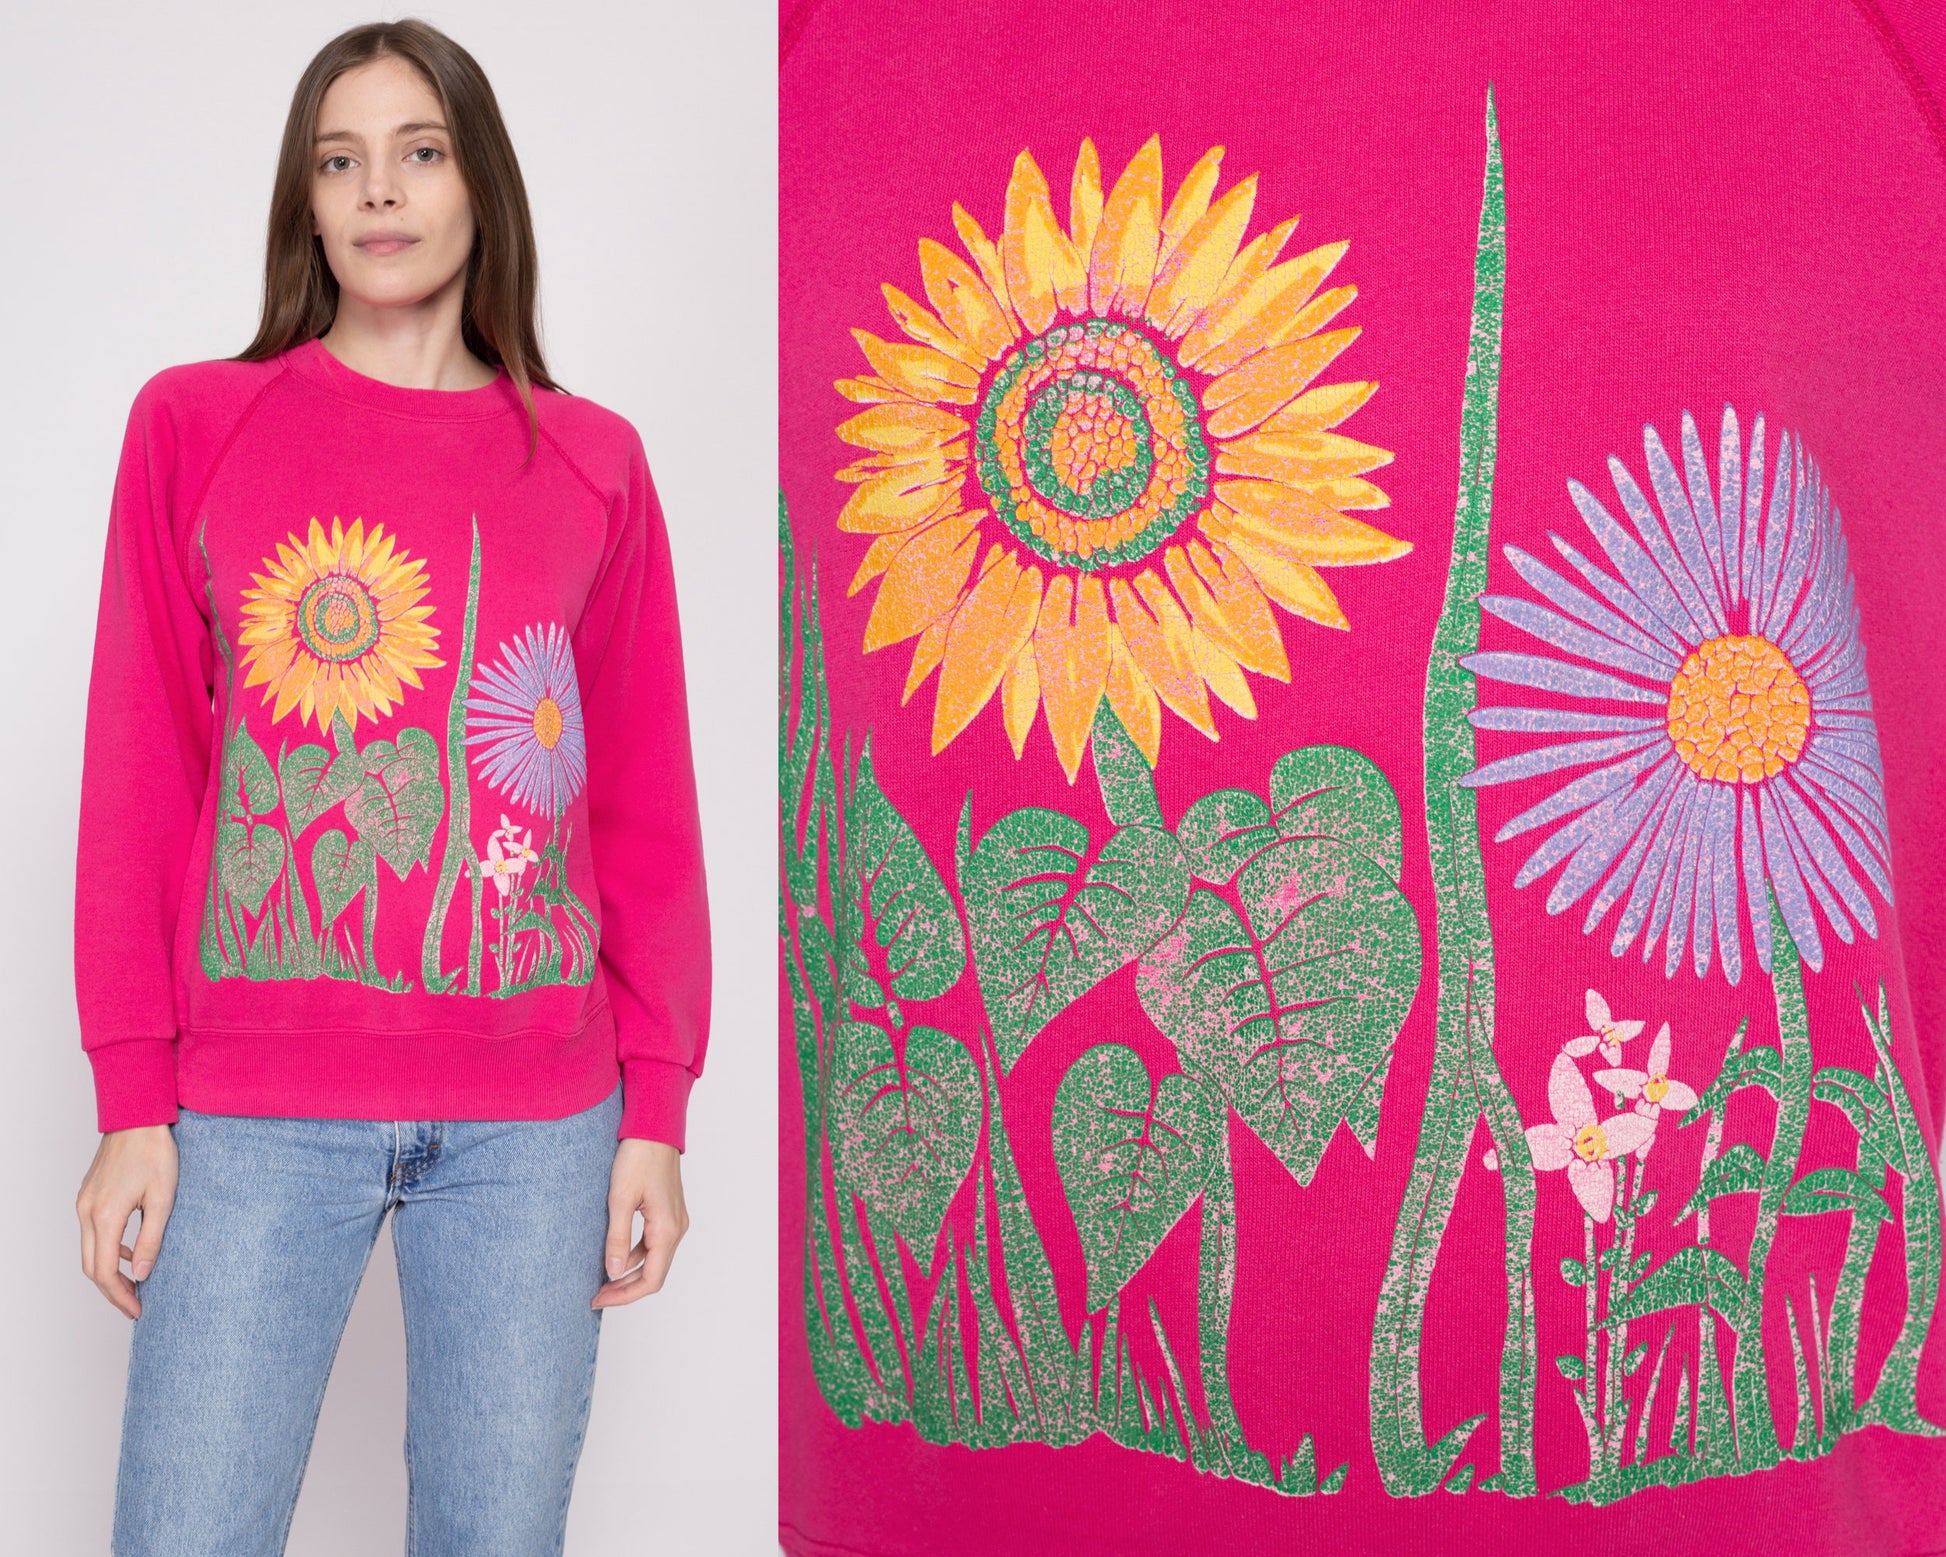 M| 80s Hot Pink Flower Garden Sweatshirt - Medium | Vintage Floral Graphic Crewneck Pullover